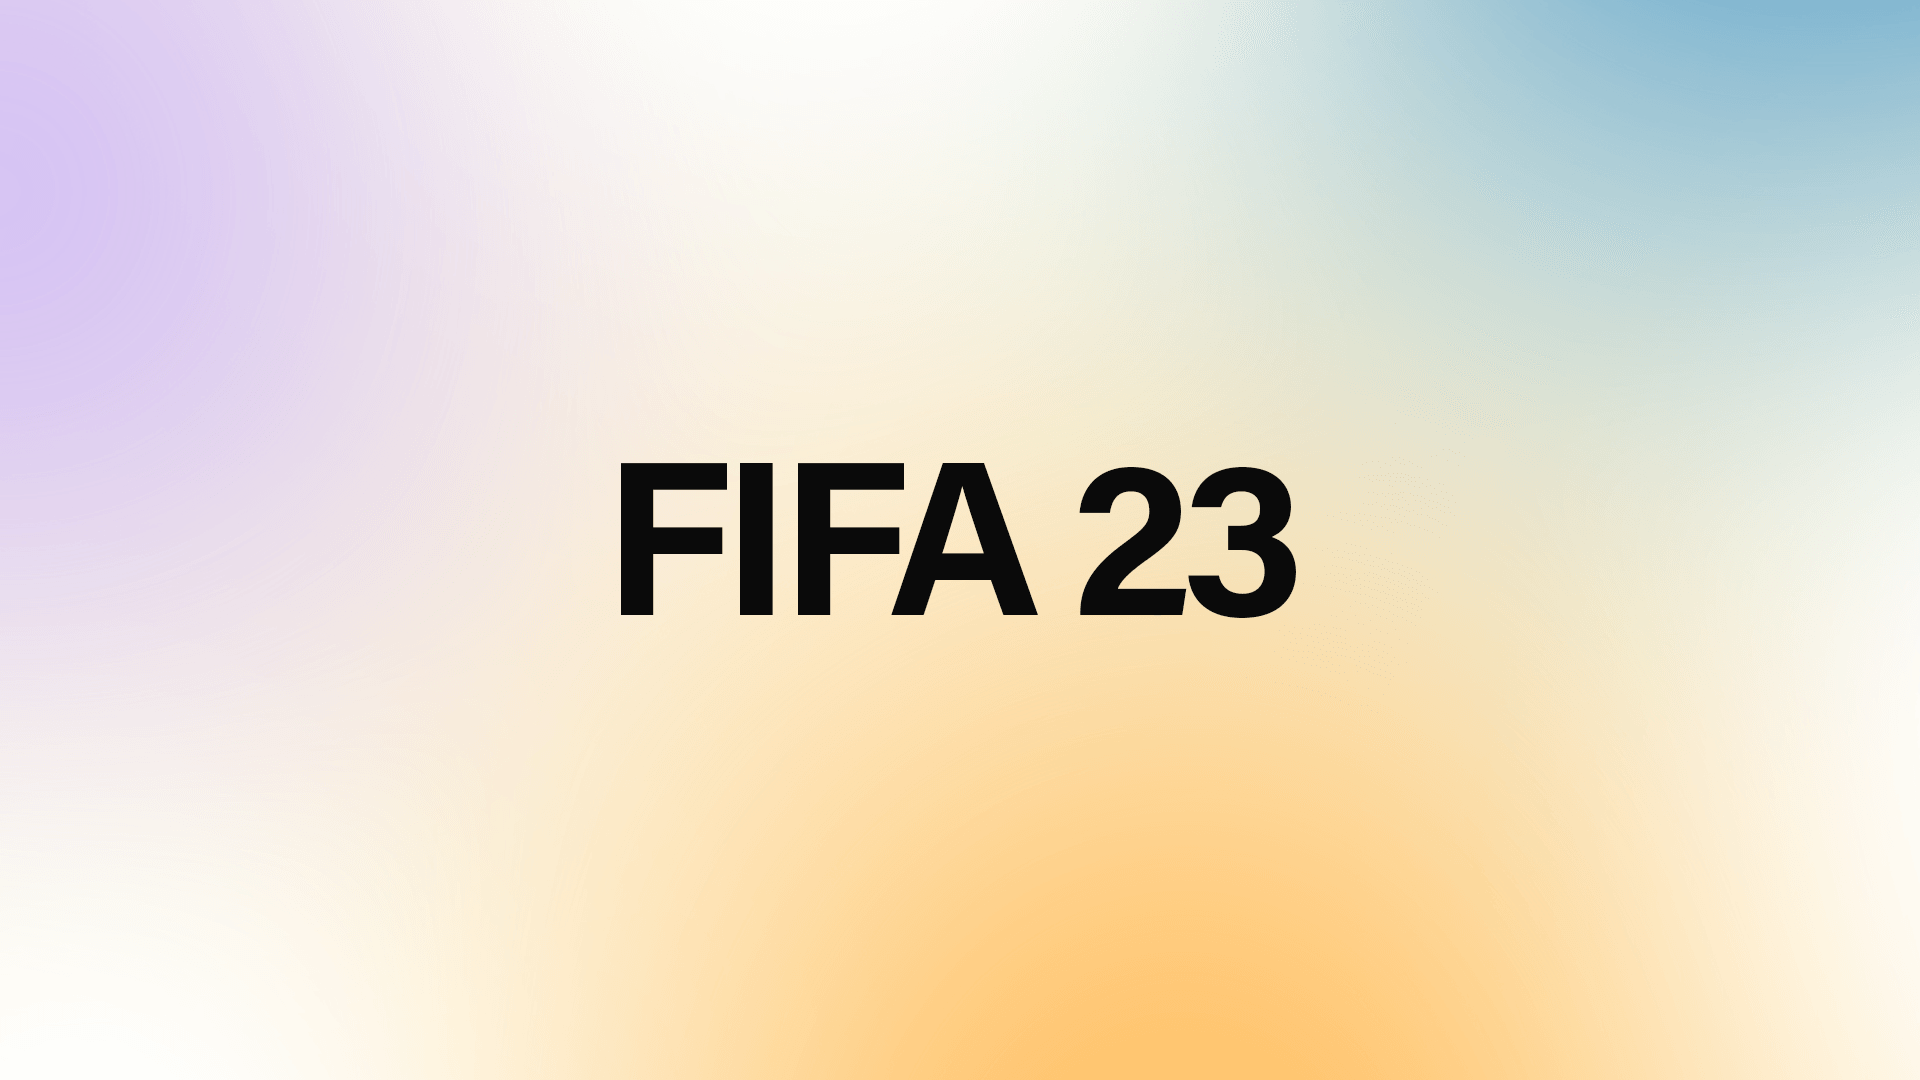 FIFA 23 - GFXCRATE